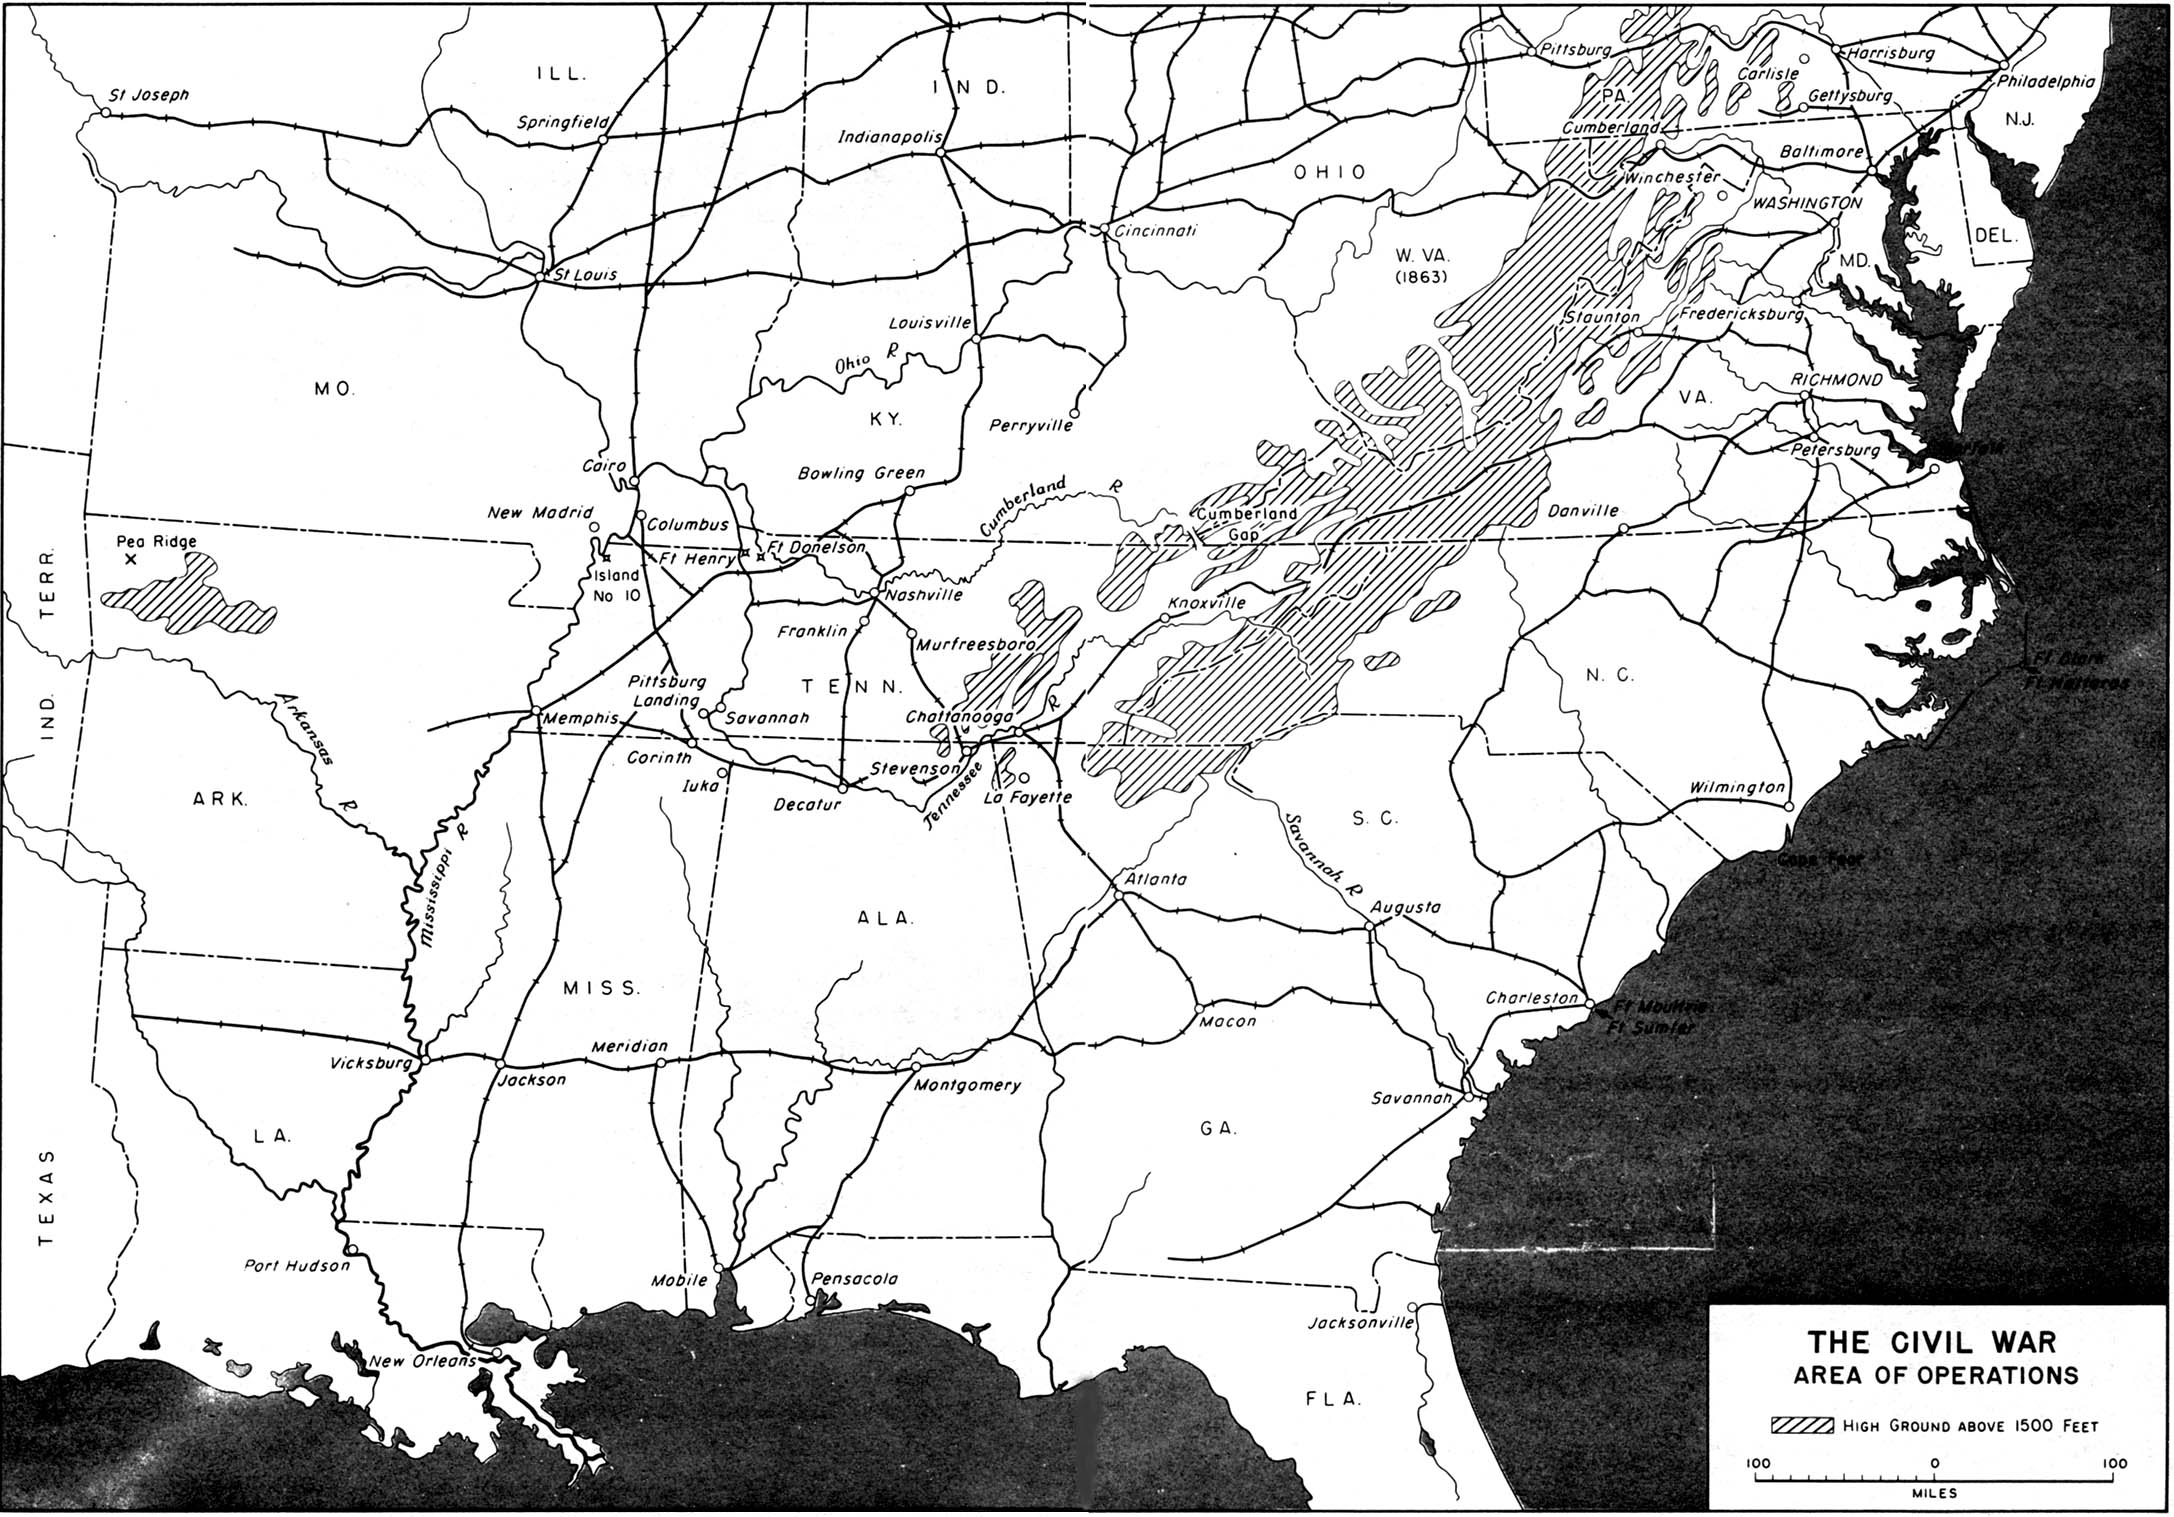 Mapa de la Región de Operaciones de la Guerra Civil Estadounidense 1861 - 1865